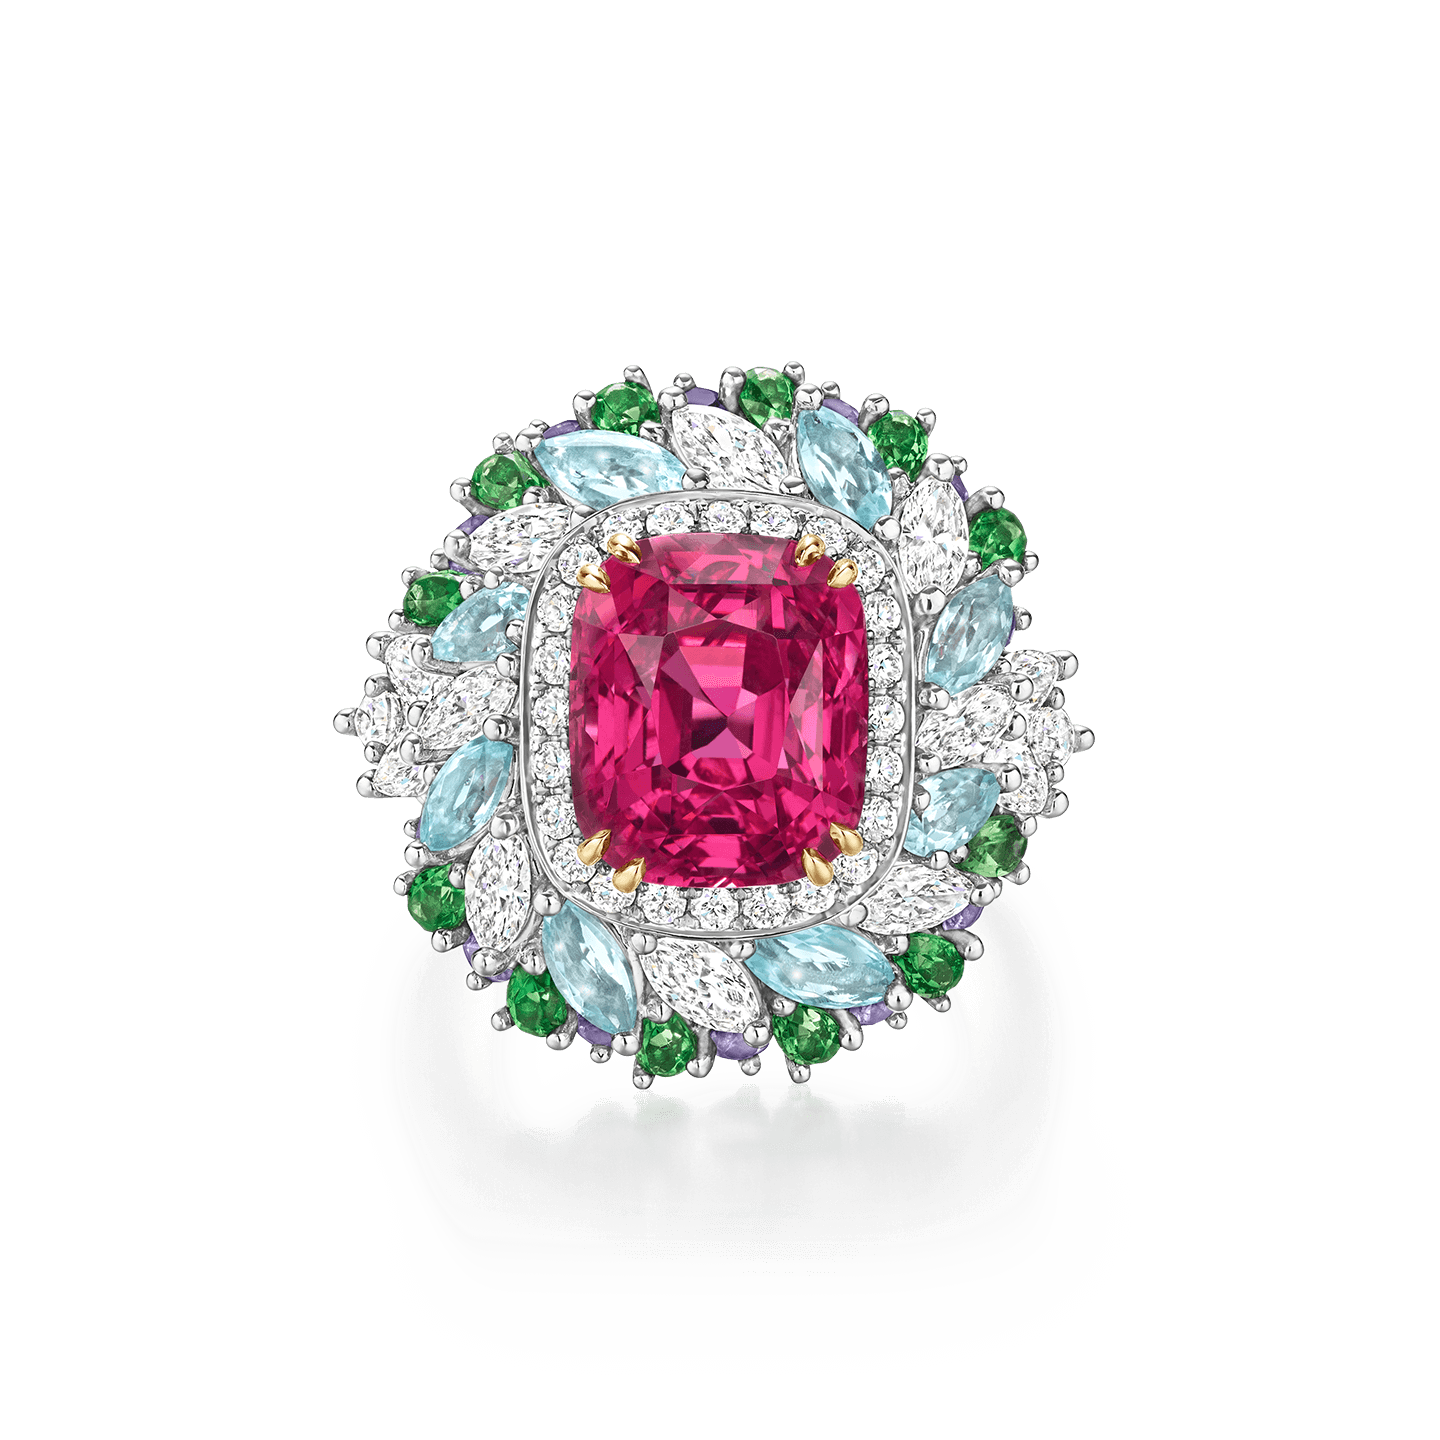 Bague Winston Candy en spinelle rose avec des grenats tsavorite, saphirs violets, tourmalines Paraïba et diamants